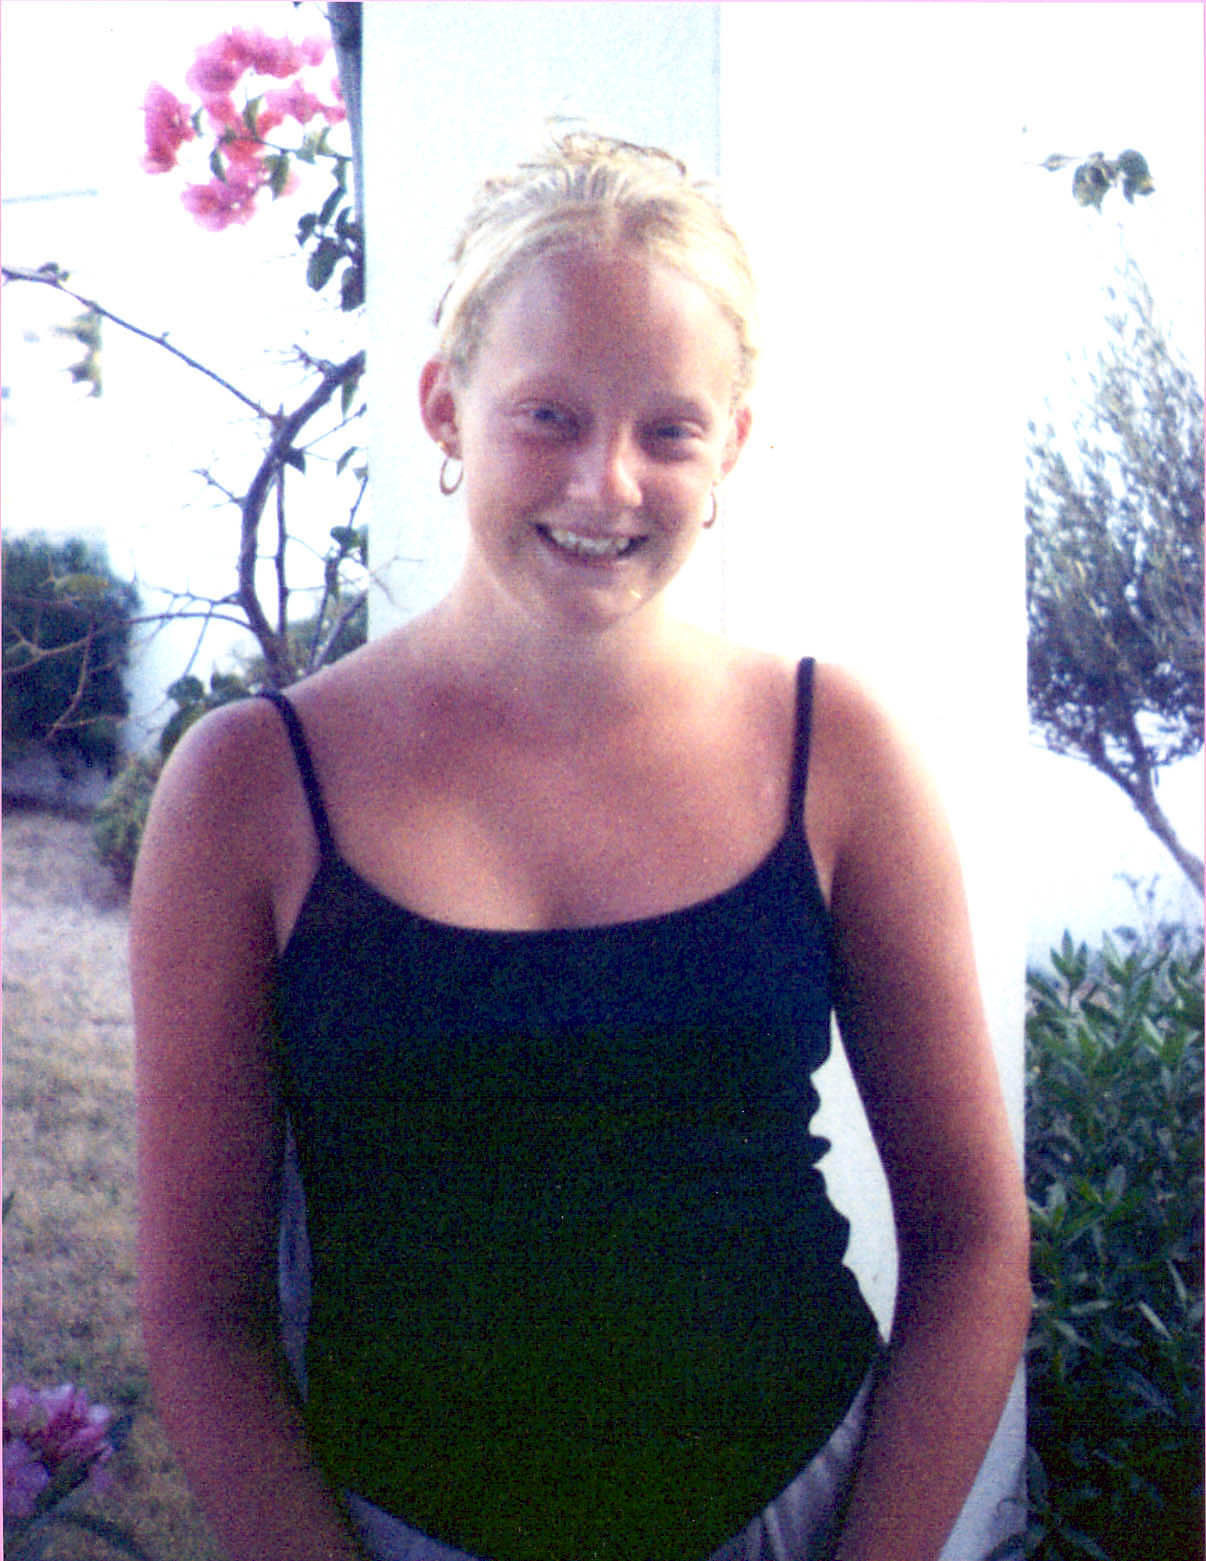 Danielle verschwand im Jahr 2001 und ihre Leiche wurde nie gefunden